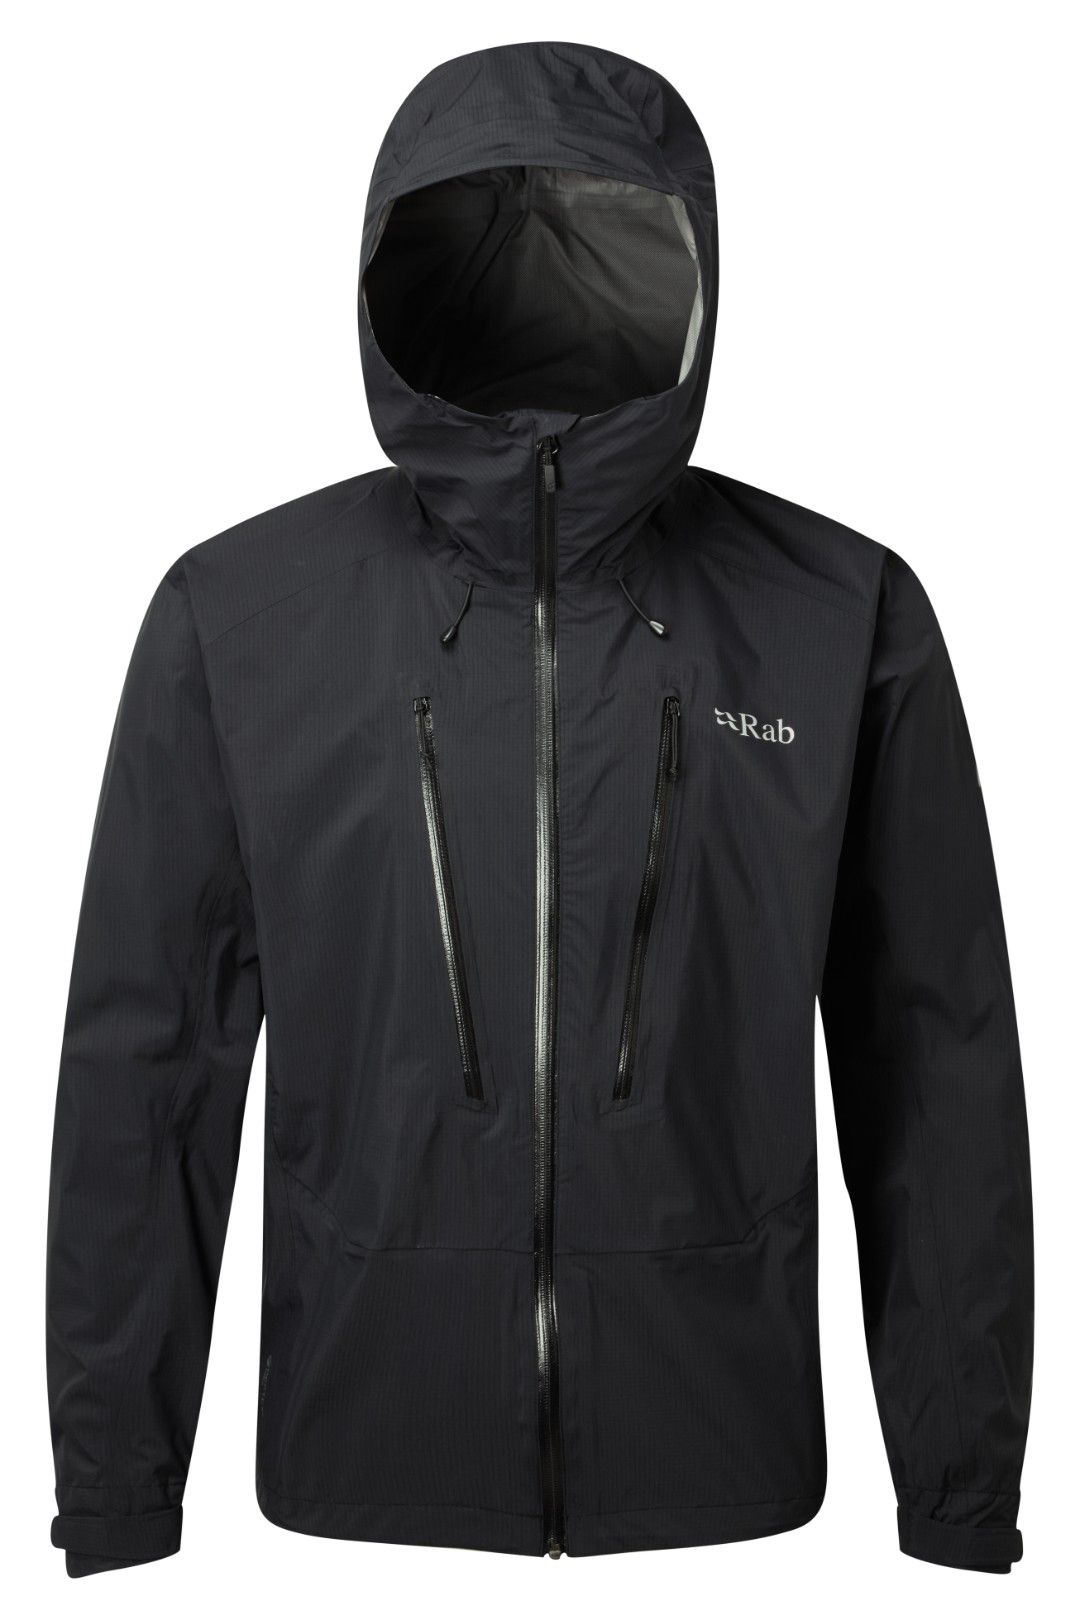 Rab - Downpour Alpine Jacket - Giacca antipioggia - Uomo